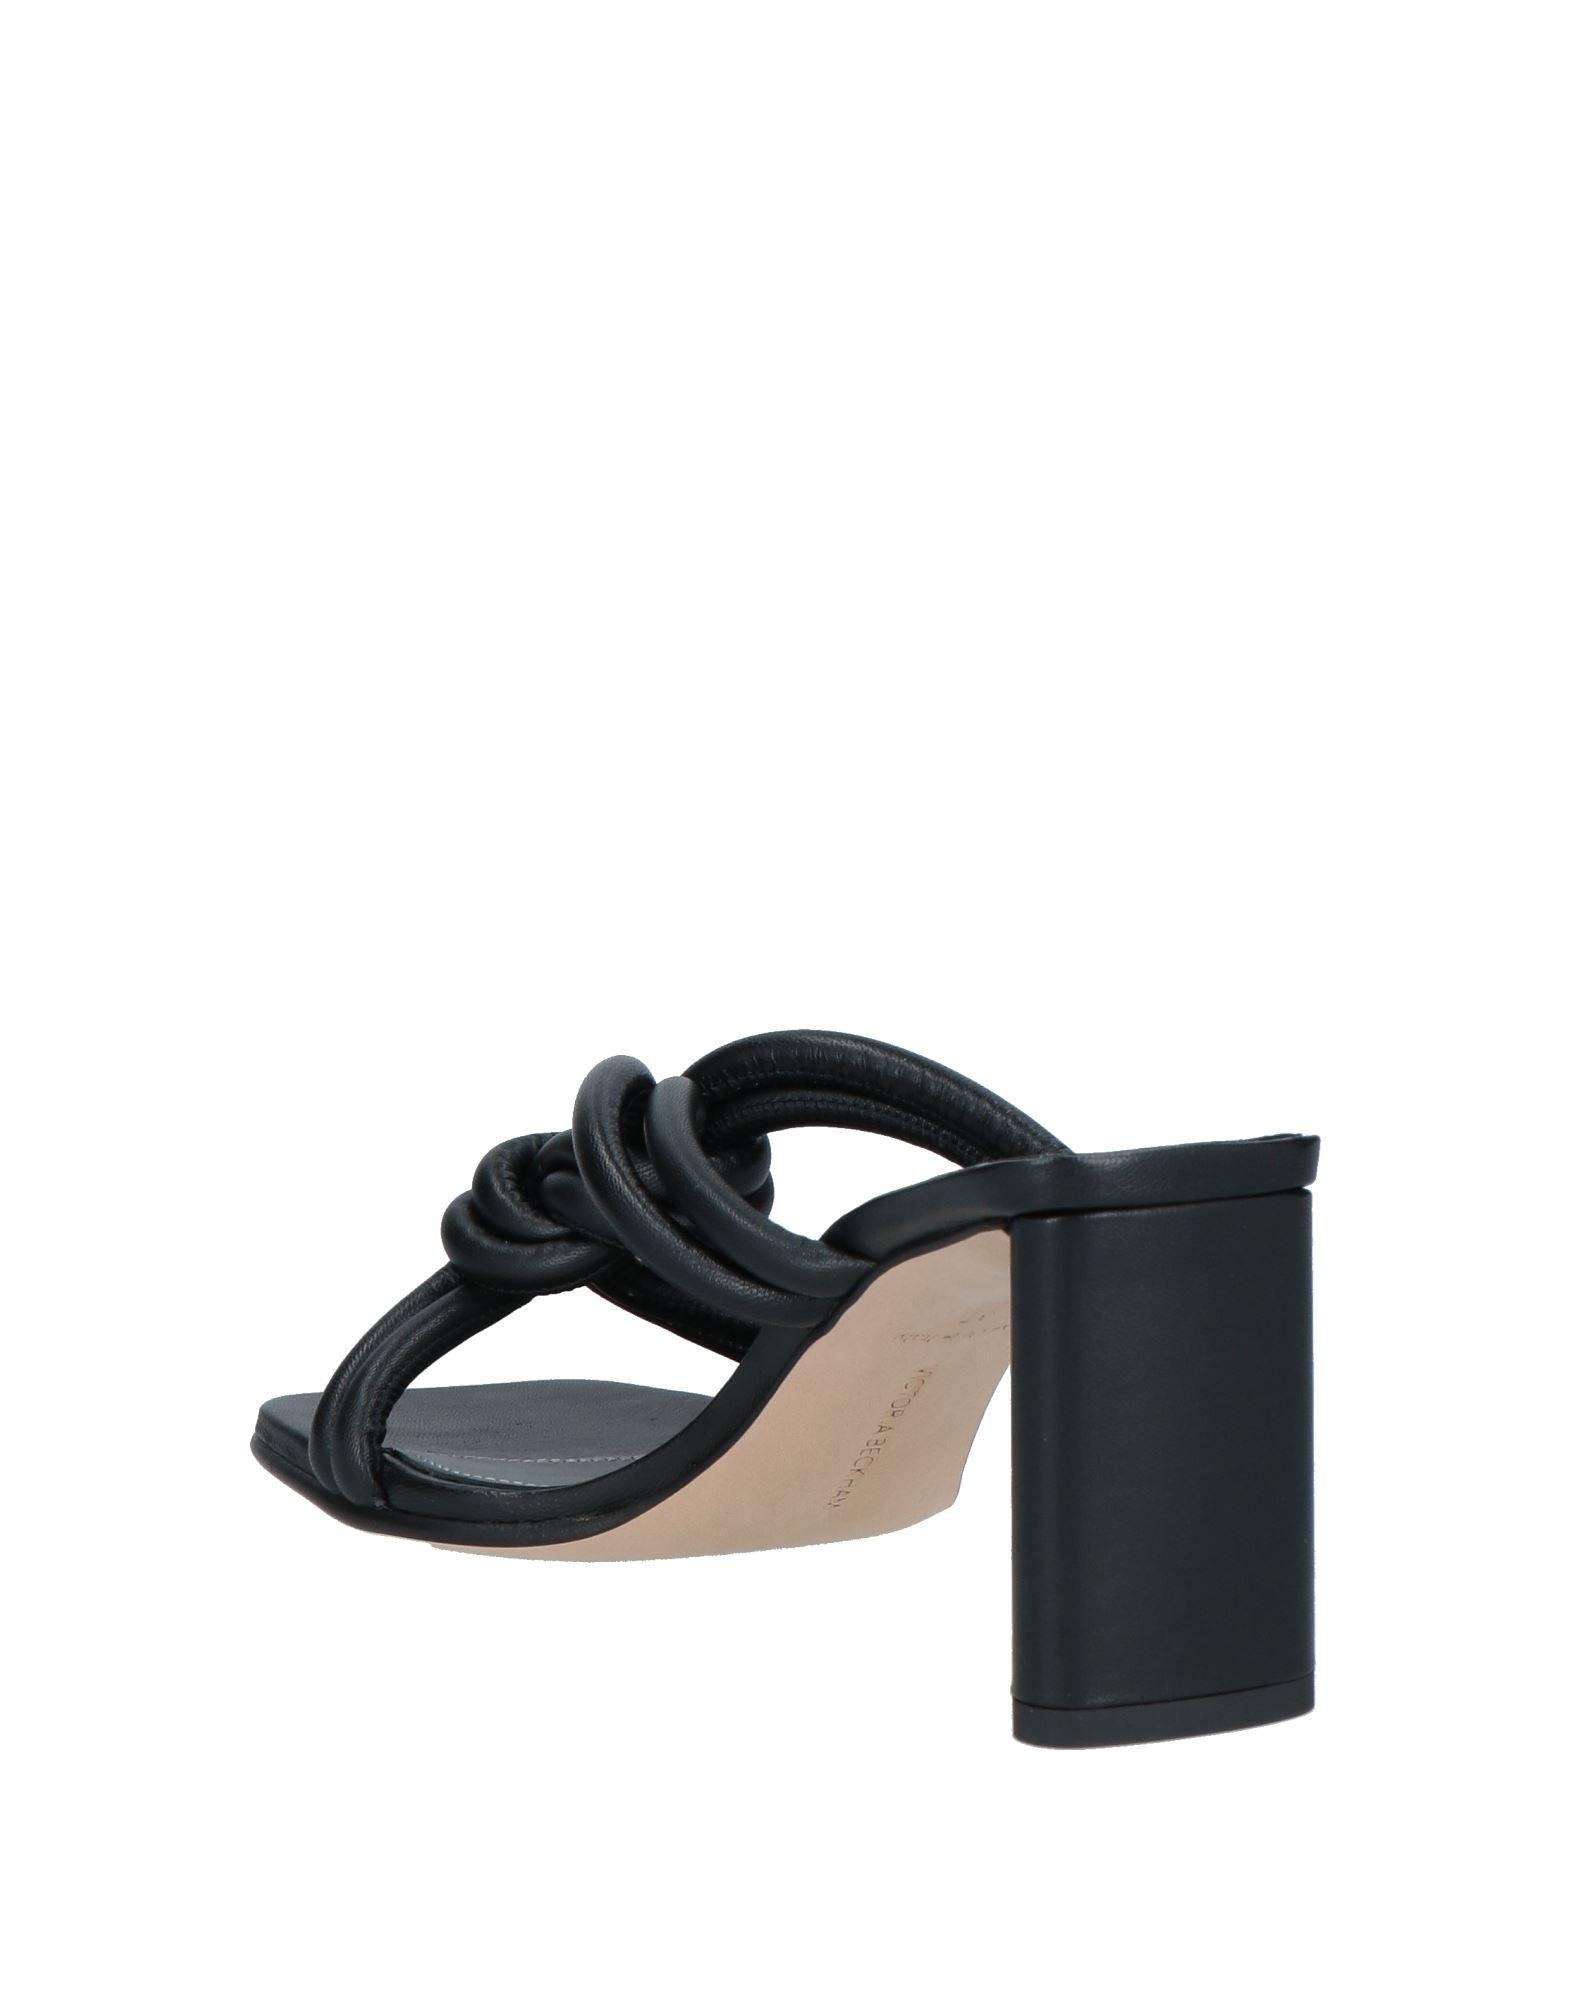 Victoria Beckham Sandals in Black | Lyst